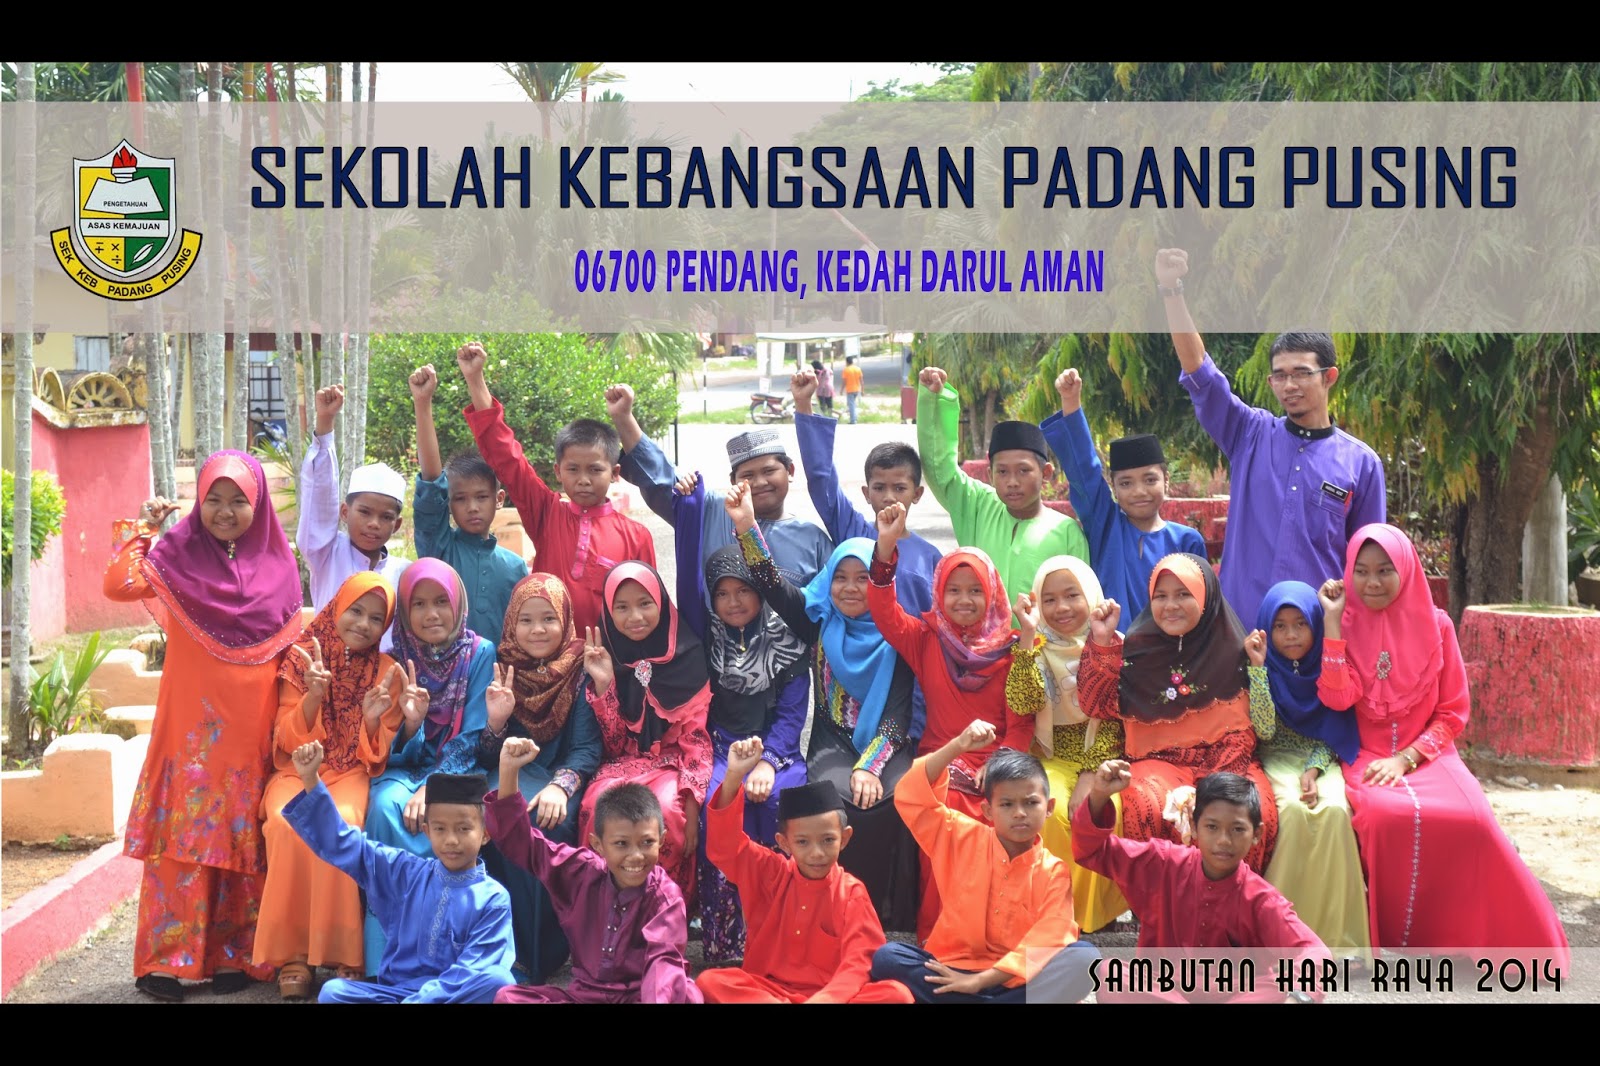 Sambutan Hari Raya SK Padang Pusing 2014